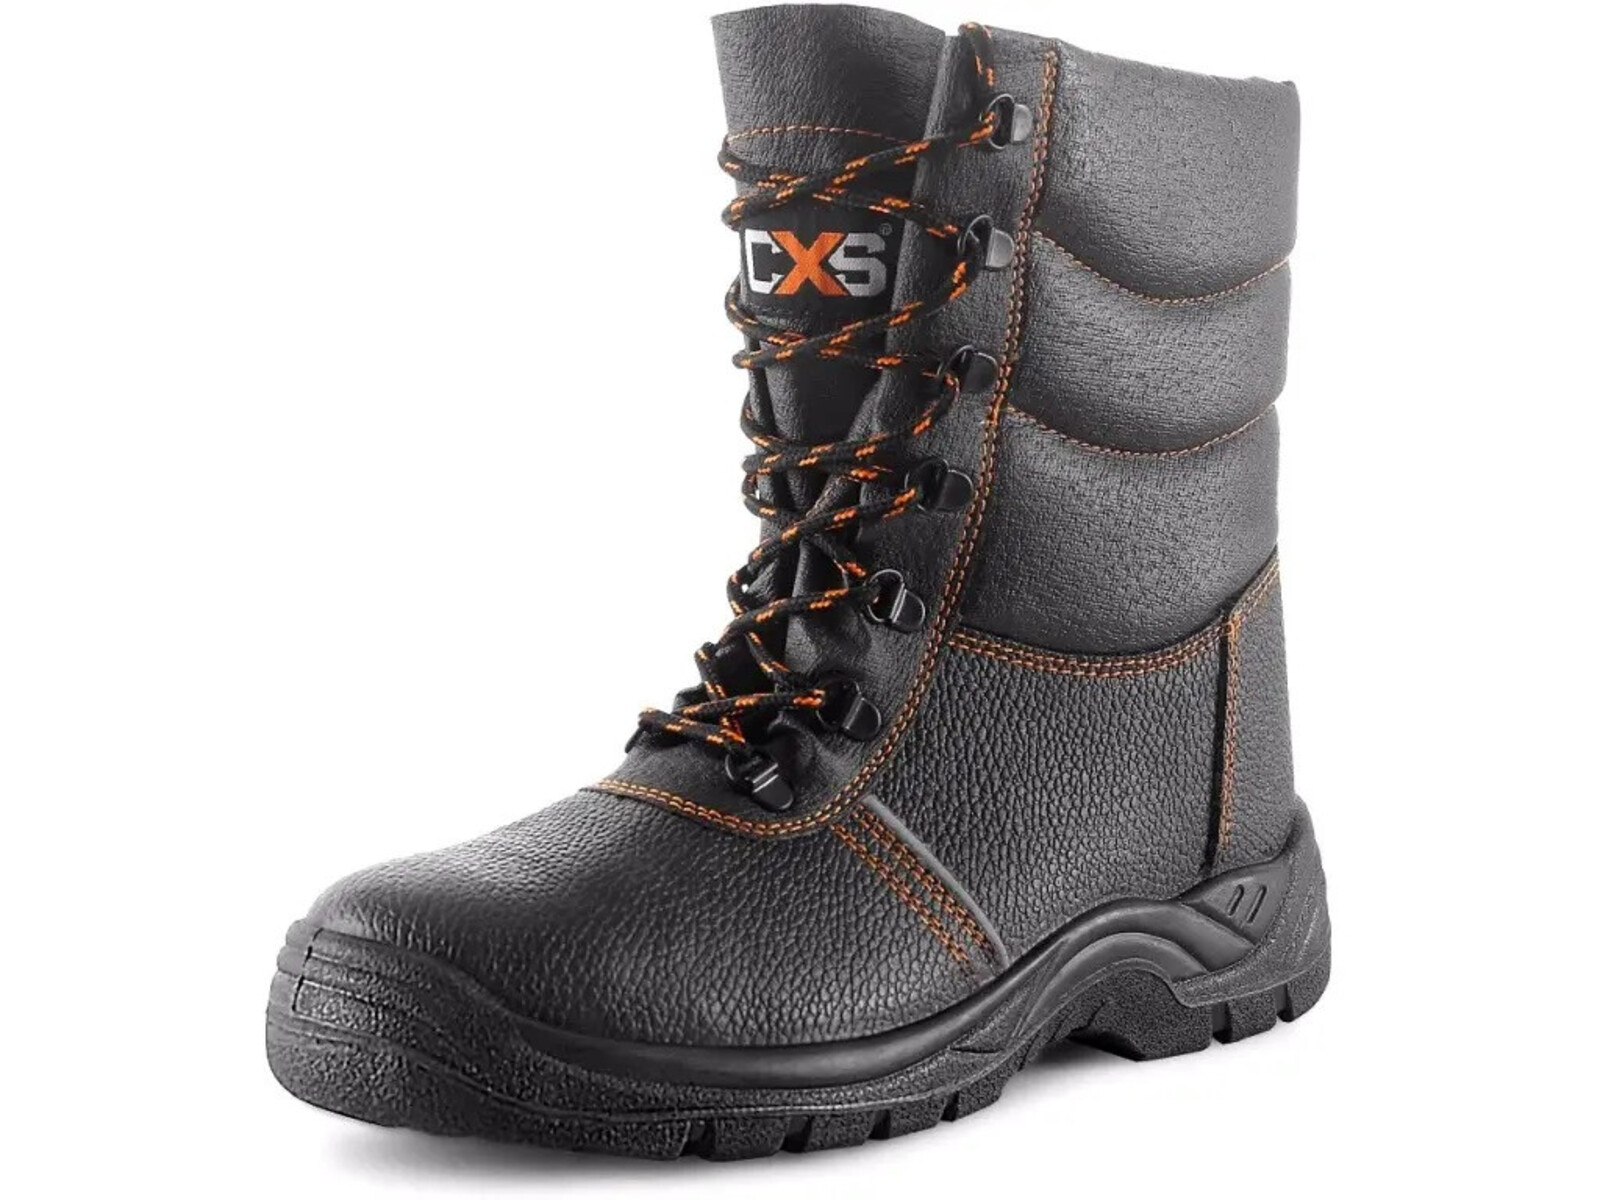 Zimná bezpečnostná poloholeňová obuv CXS Stone Topaz Winter S3 SRC - veľkosť: 41, farba: čierna/oranžová